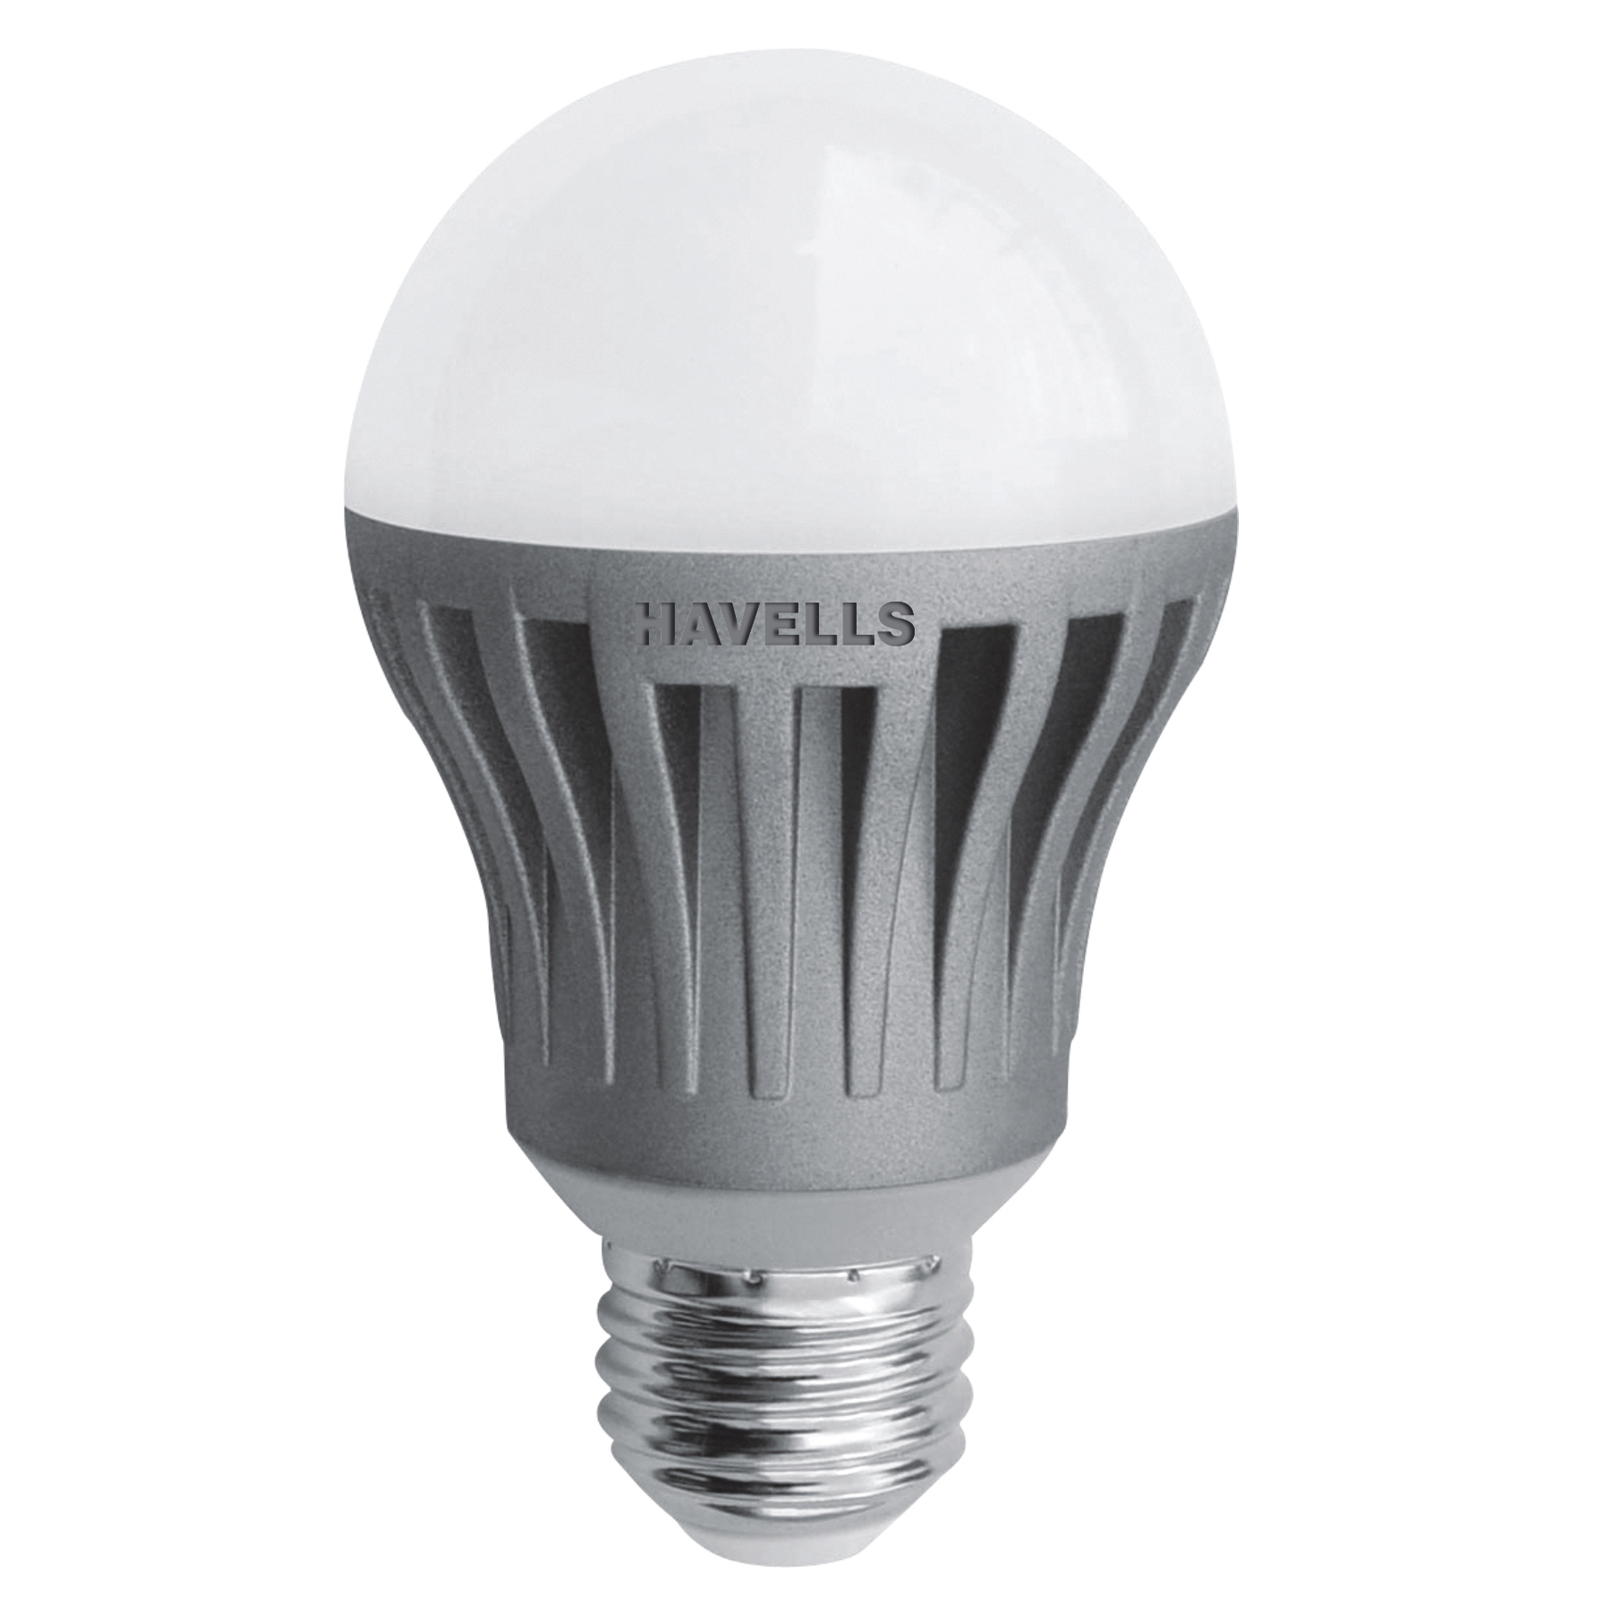 Havells Launches Energy Star Led Lamp Portfolio inside sizing 1600 X 1600